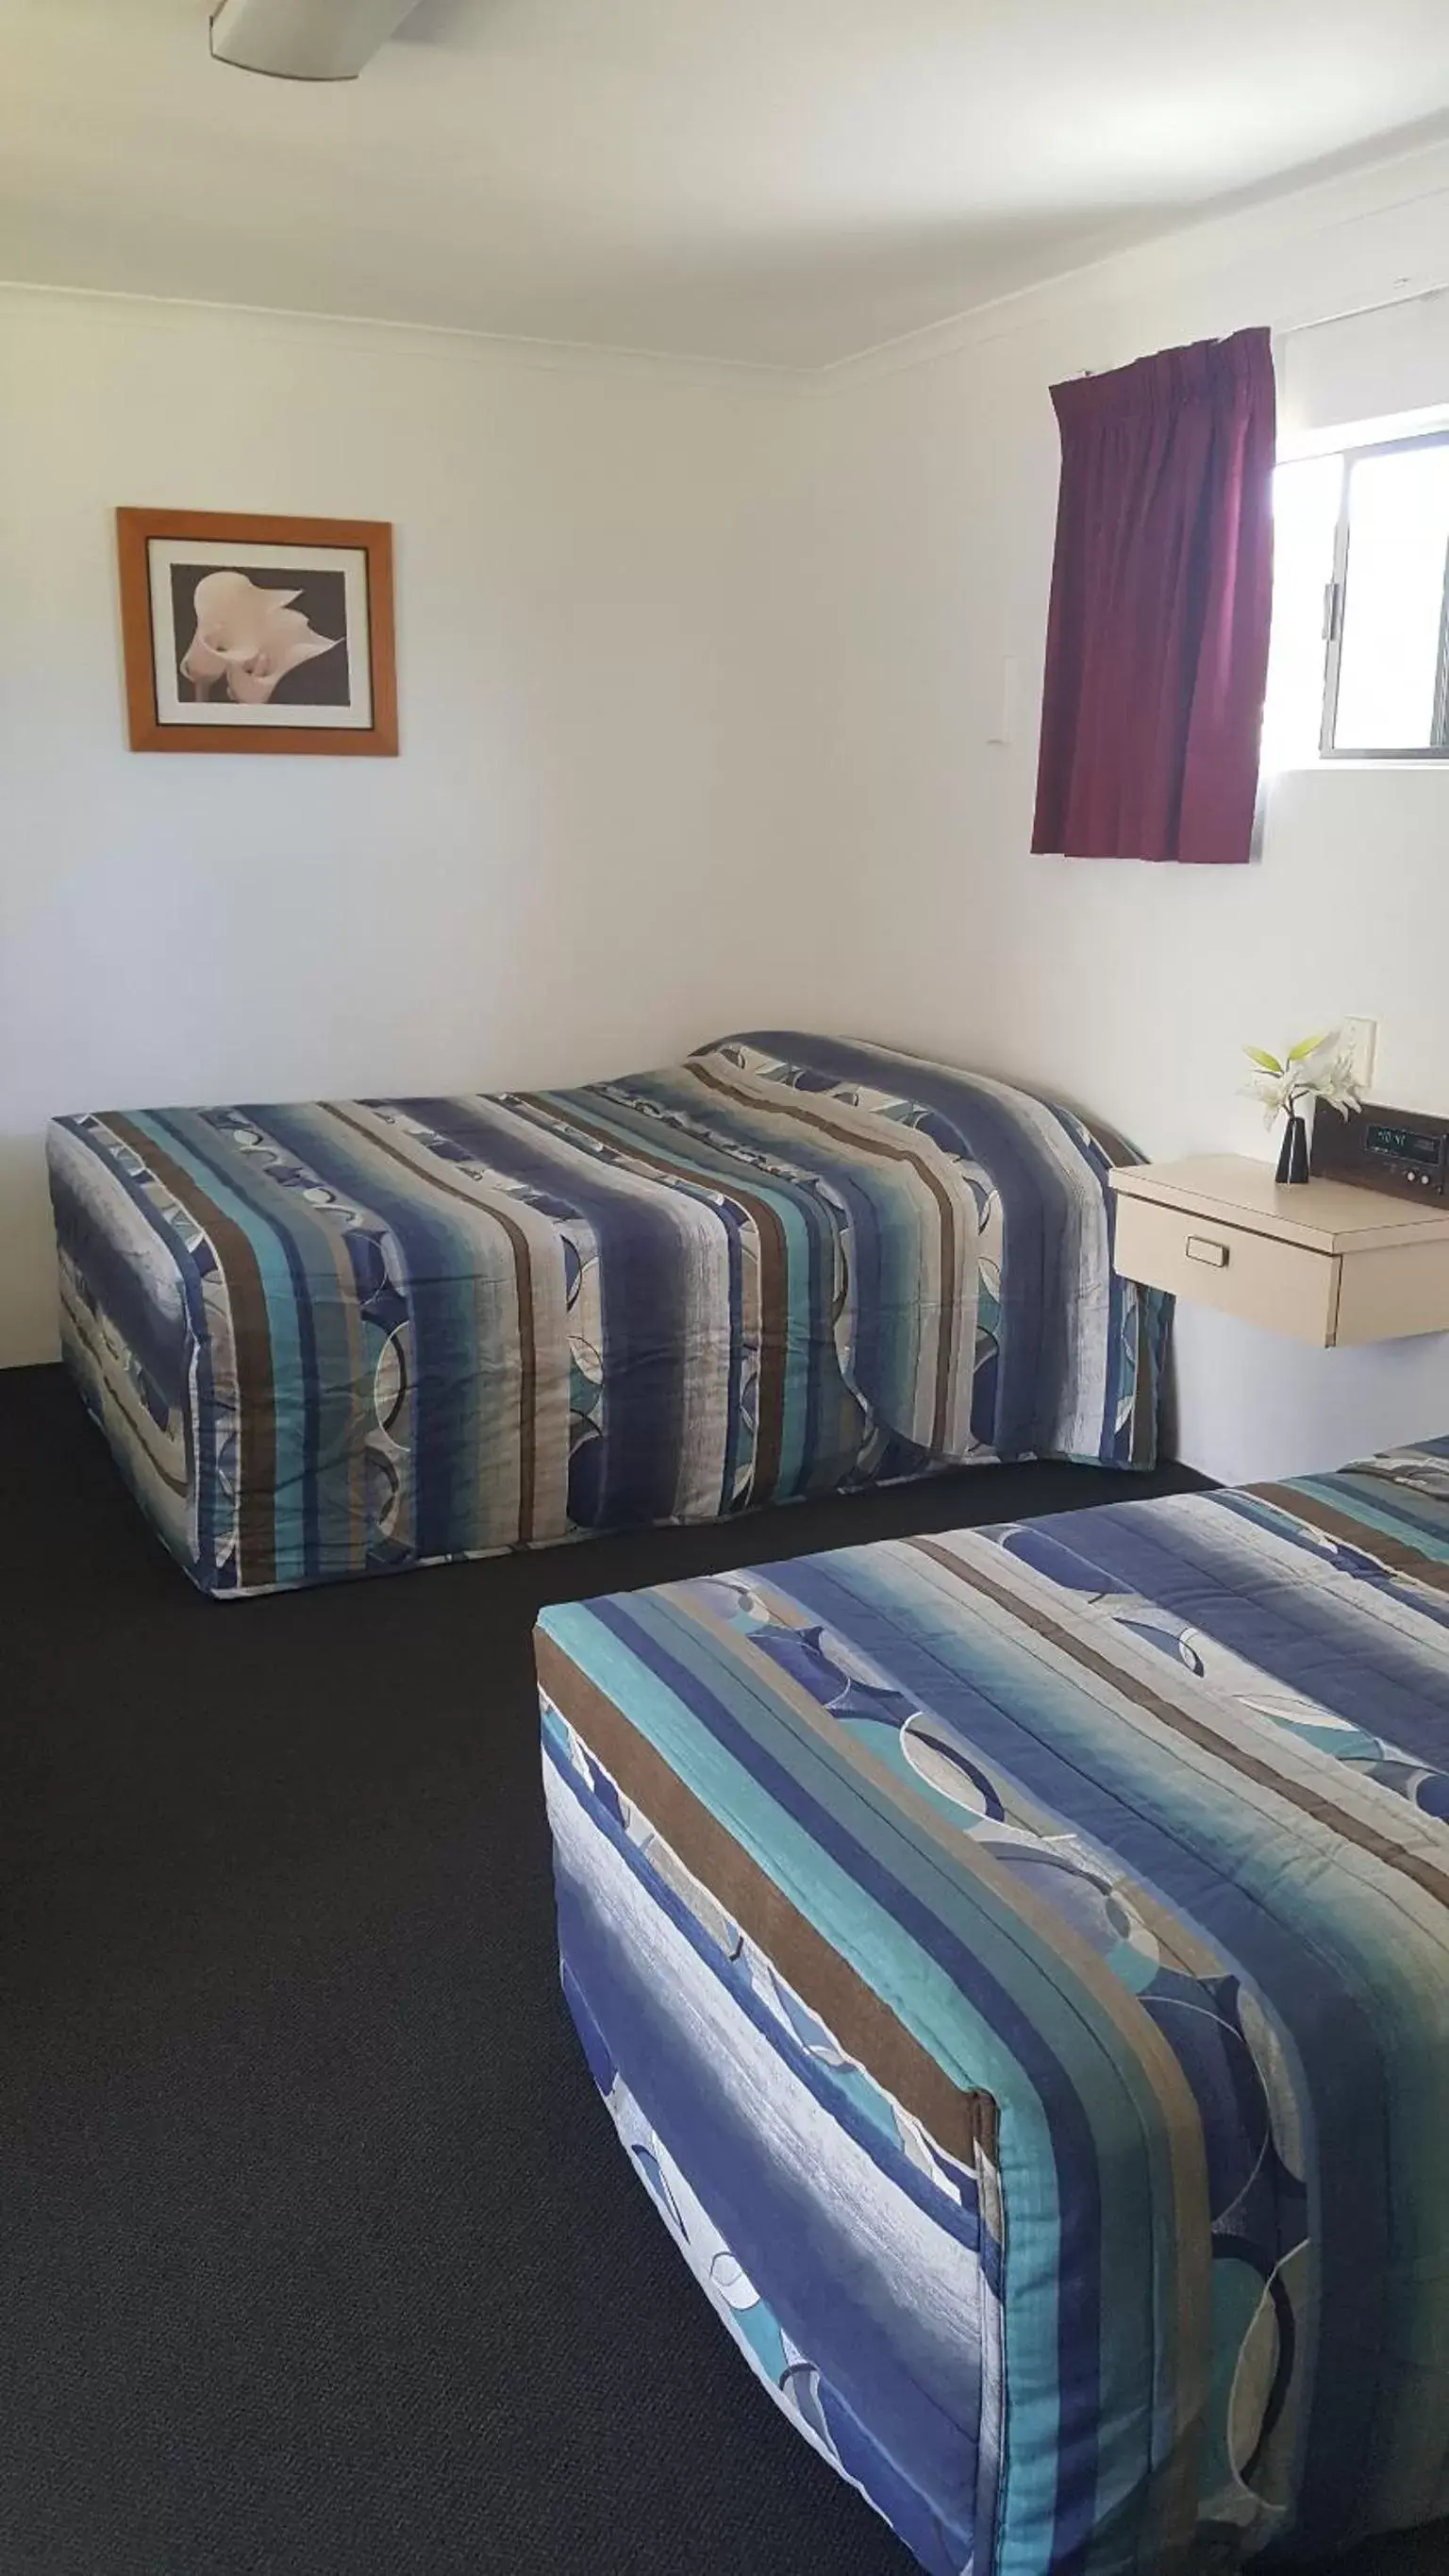 Bed, Room Photo in Siesta Villa Motel